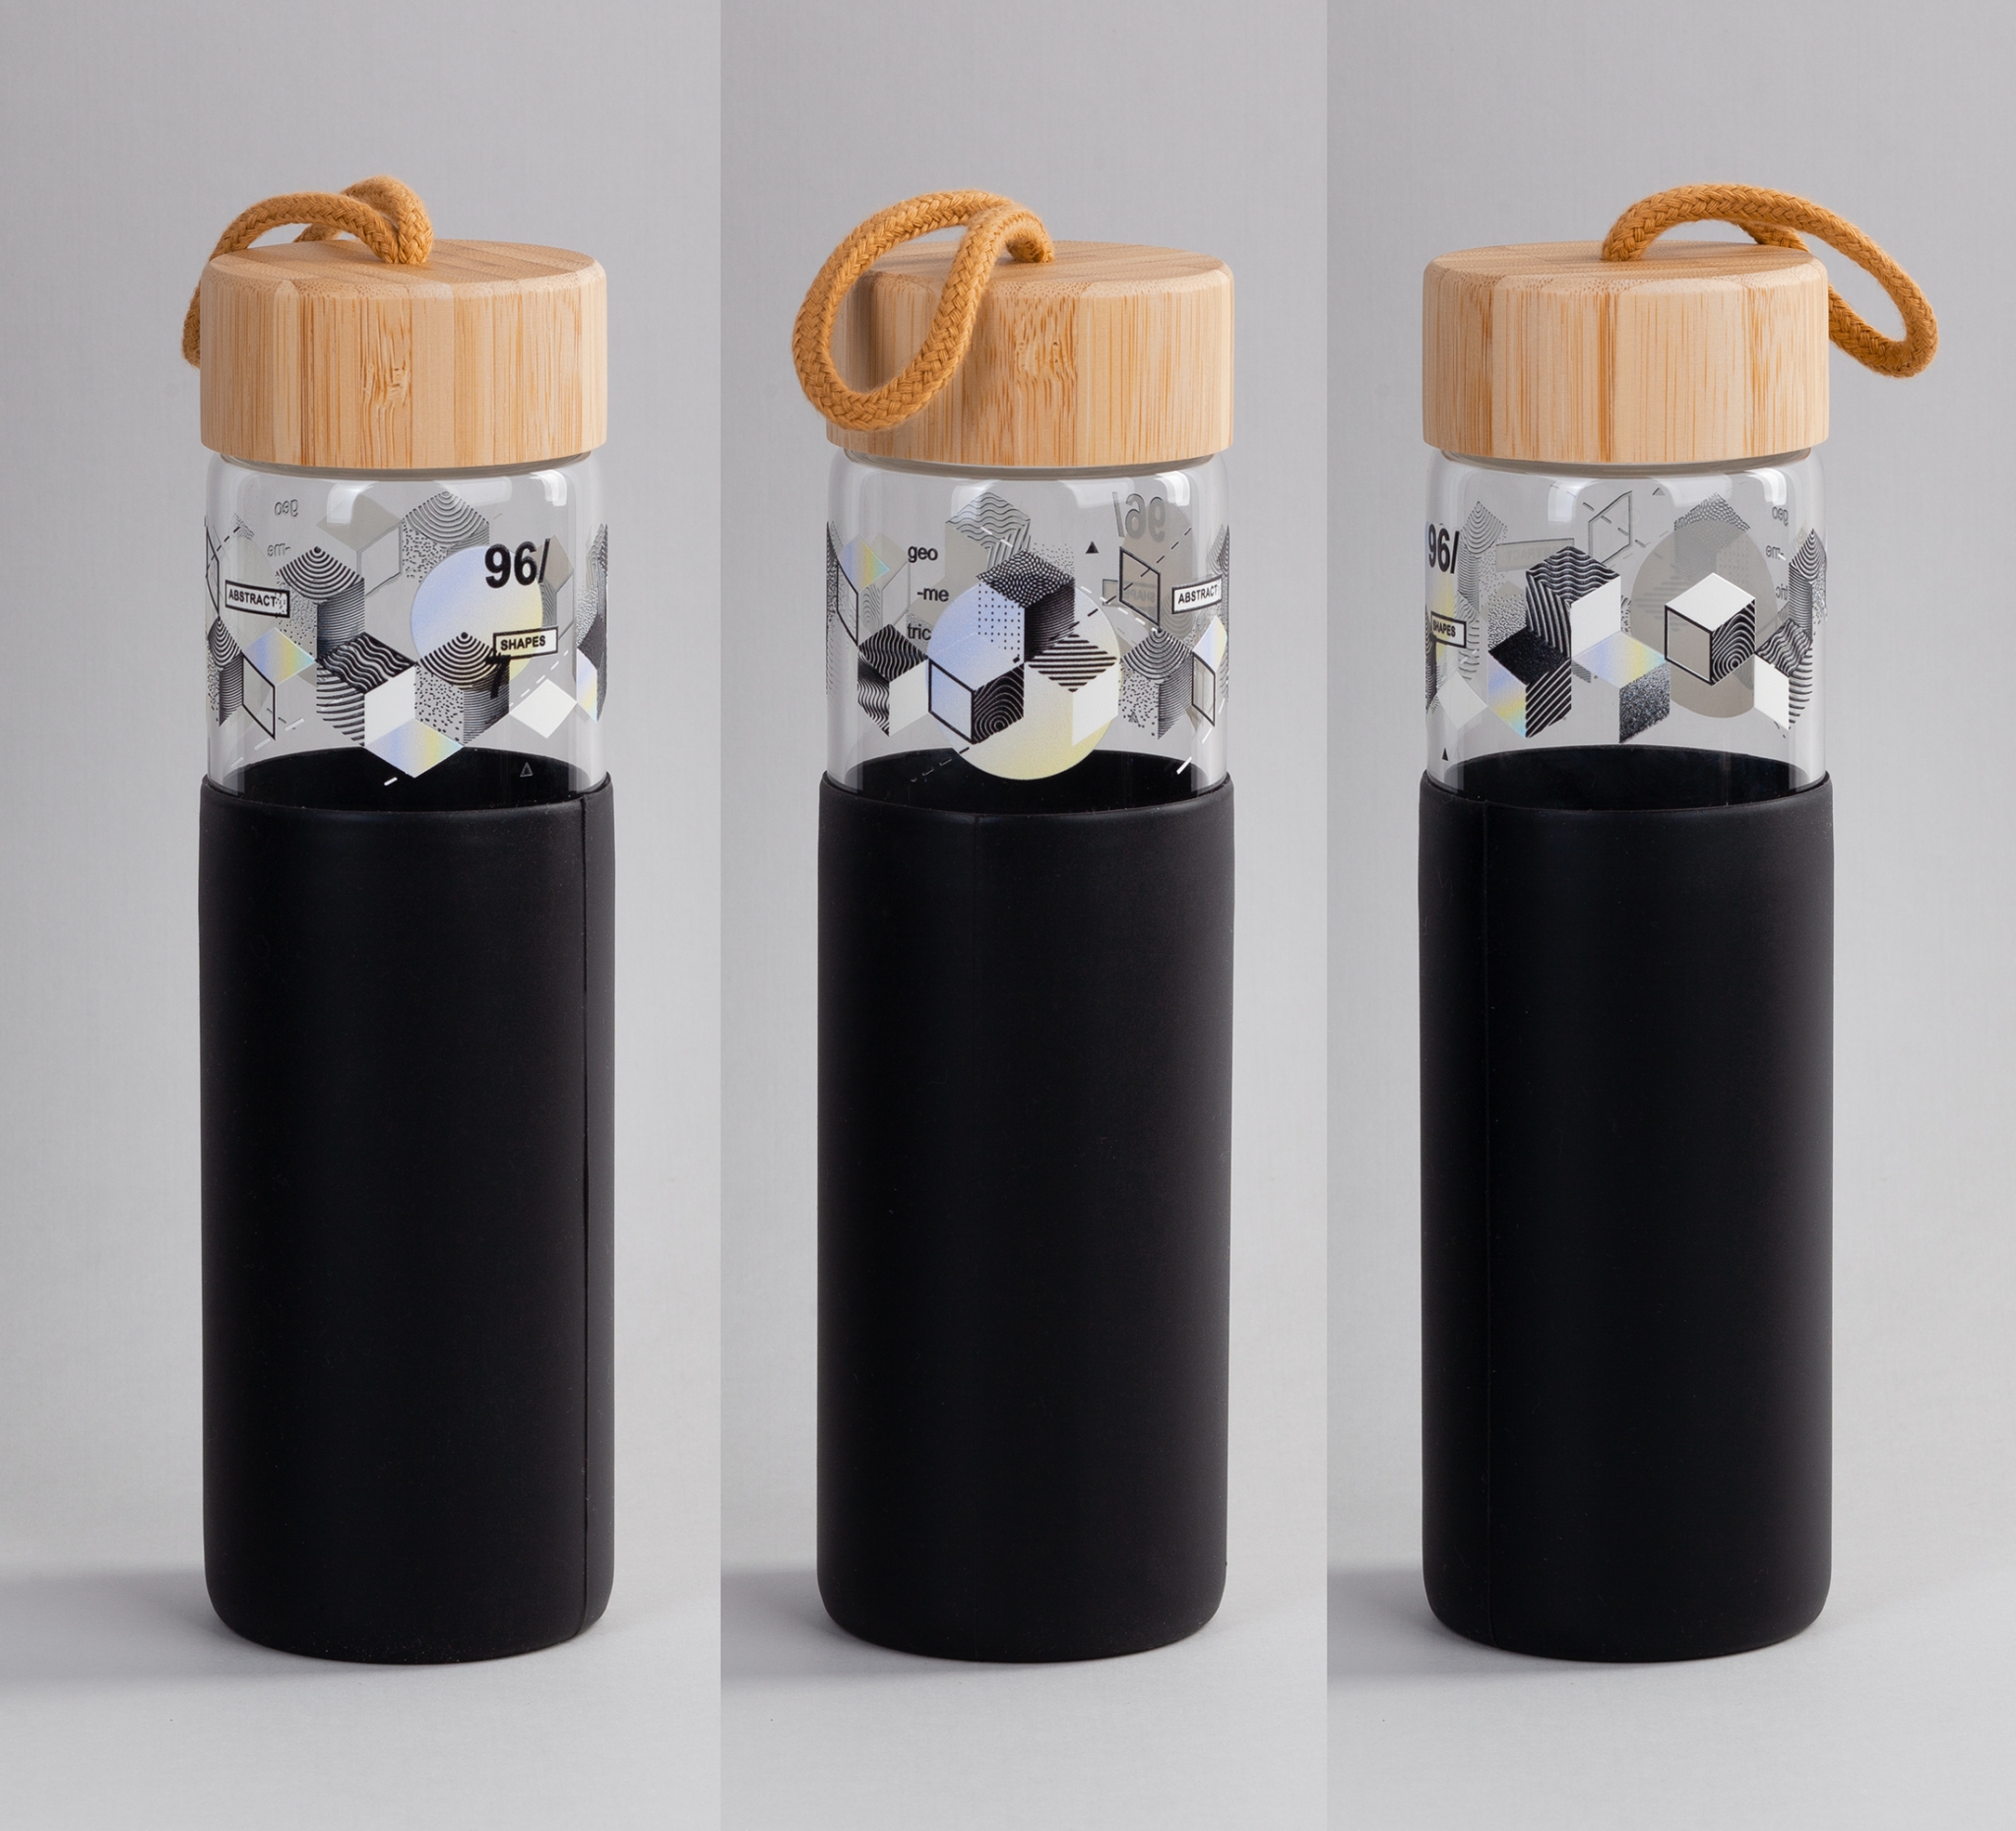 Бутылка для воды "Wellness" 600 мл в силиконовом чехле, черный, боросиликатное стекло/бамбук/силикон